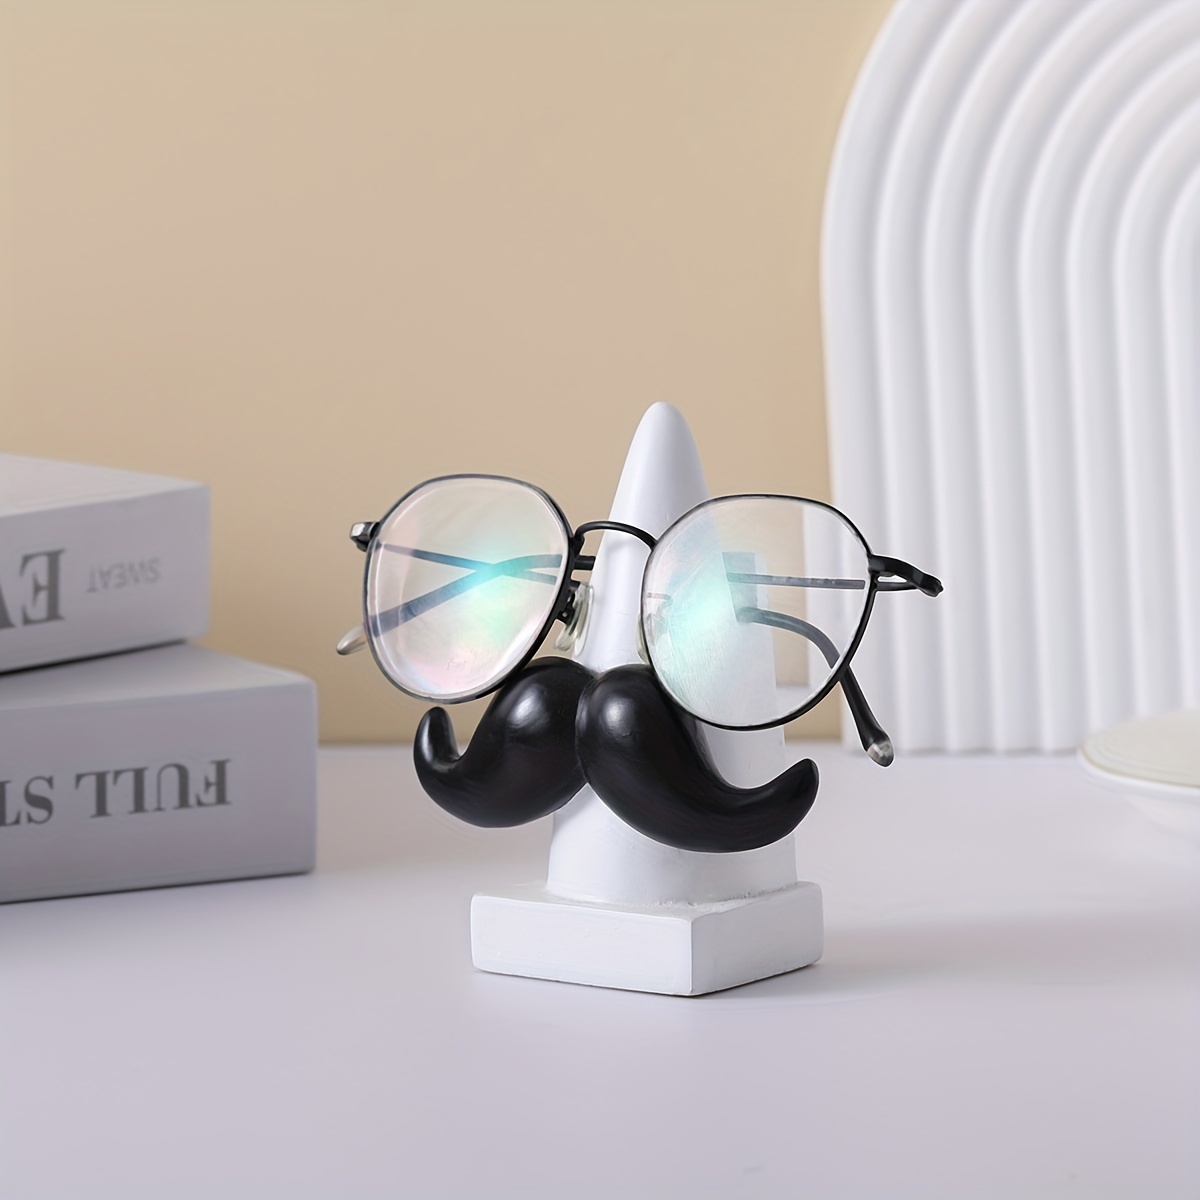 2 Stück Brillenständer, Sonnenbrillen Brillenhalter Kreative Kunststoff  Brillenregal 4-Lagen Brillen Aufbewahrungs Präsentationsregal, für  AufbewahrungSonnenbrillen, Myopia-Brillen, Planspiegel : : Mode